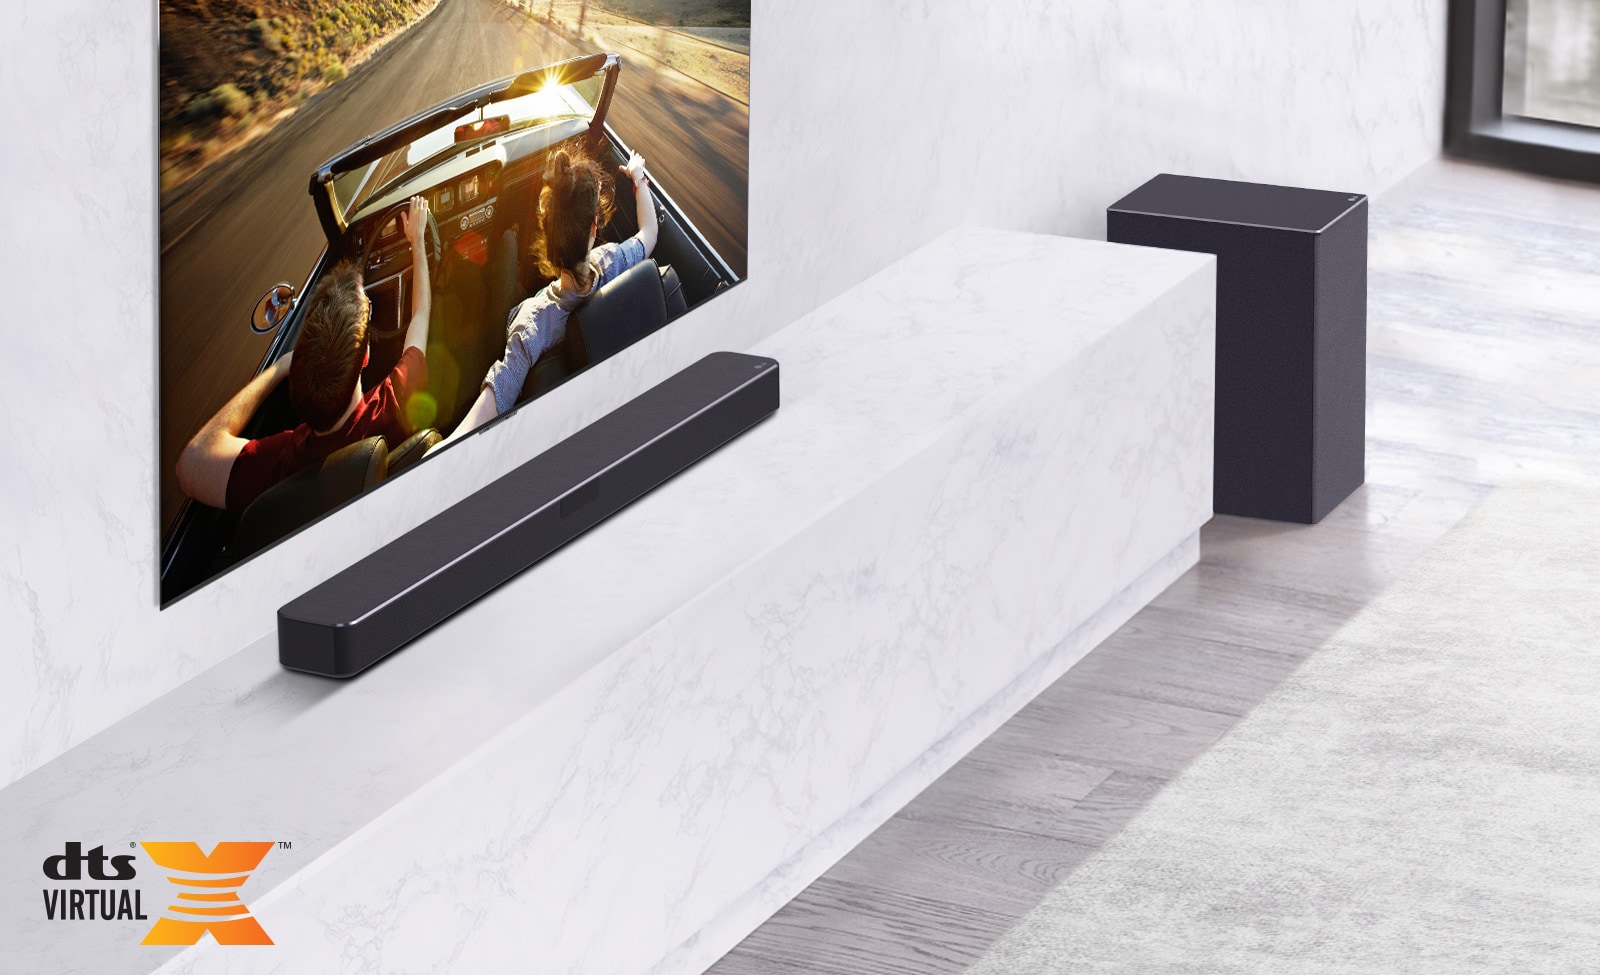 Televízor je umiestnený na stene, pod ním sa nachádza LG Sound Bar na mramorovej bielej polici so subwooferom na pravej strane. Na obrazovke televízora je pár v aute.